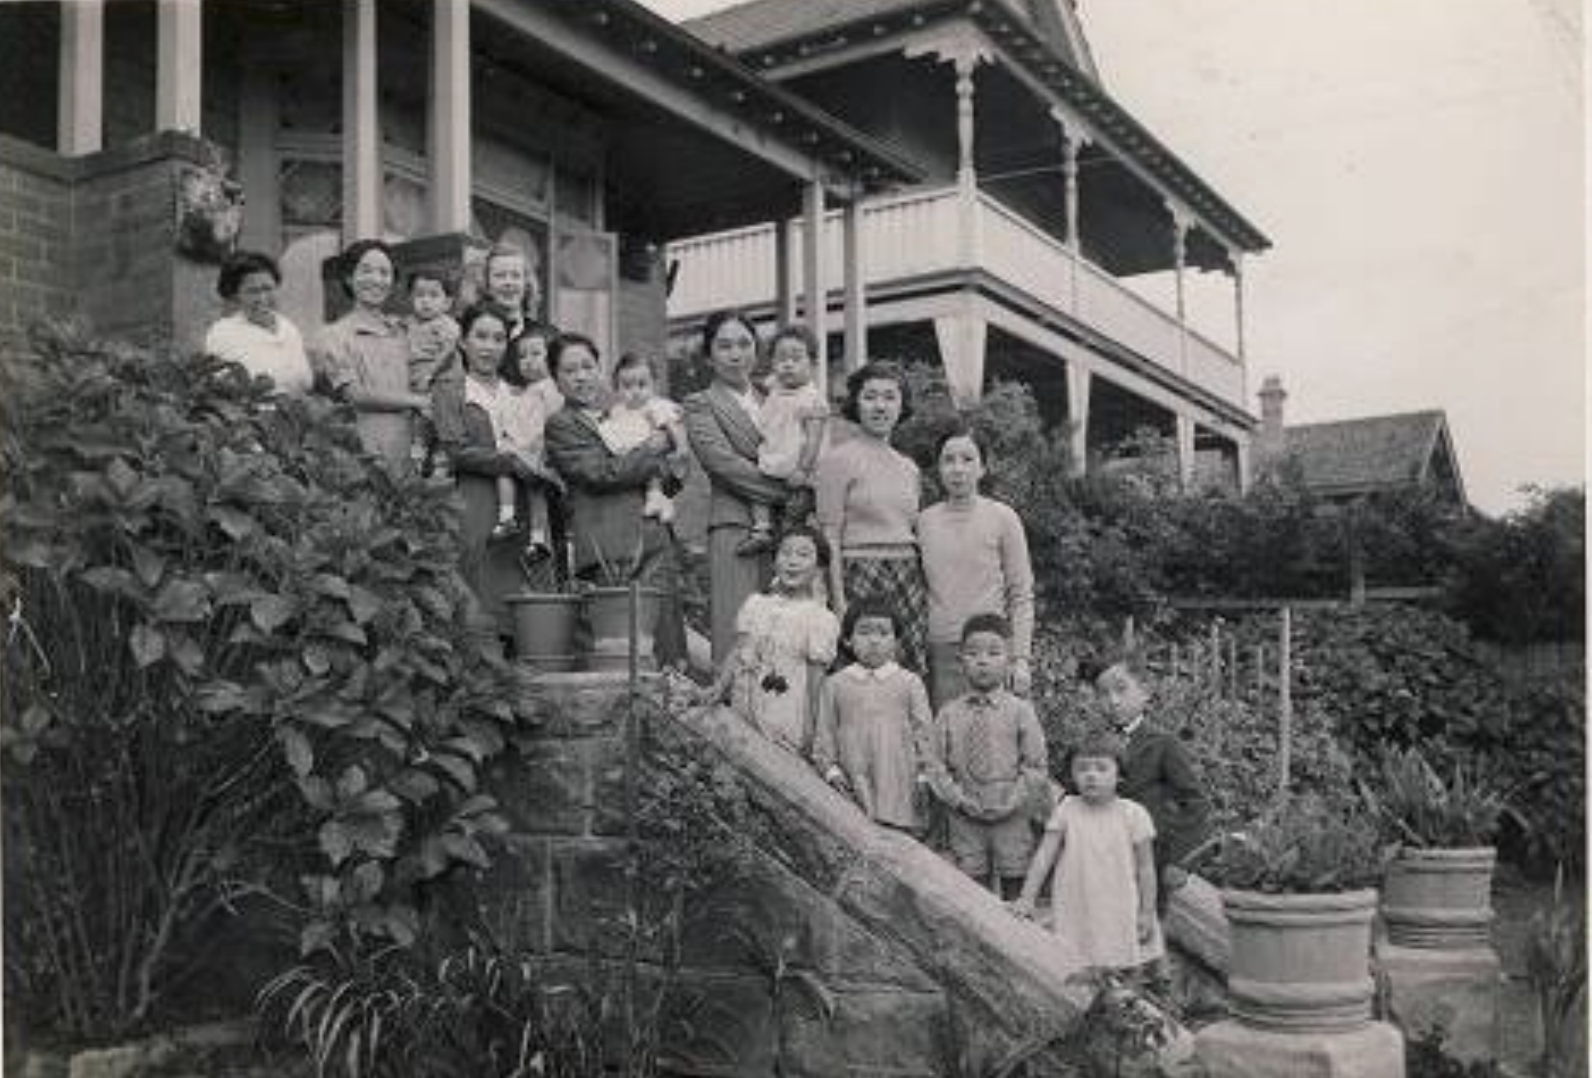 日本人と他民族および「同質的」受入社会とのかかわり – 戦前の在オーストラリア日系人の音楽舞踊を中心に – ヒュー・デフェランティ